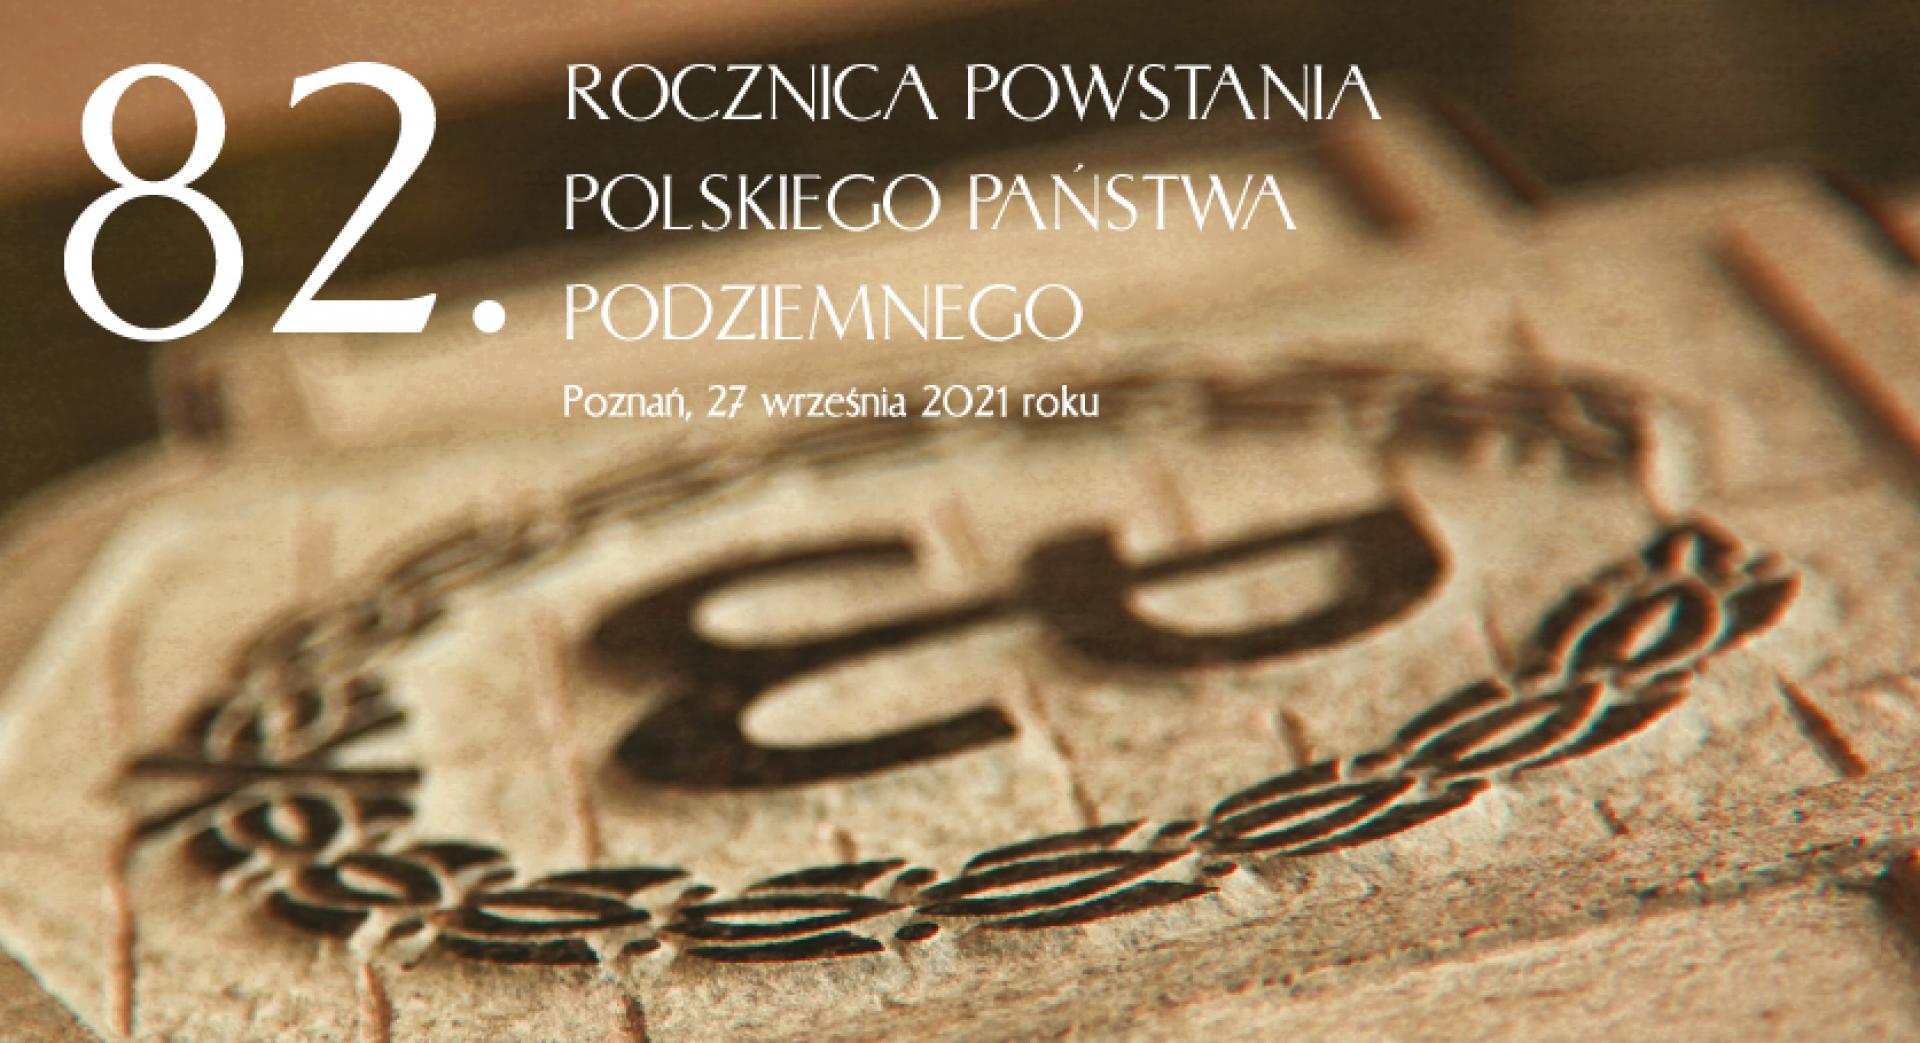 27 września spotkamy się przy Pomniku Polskiego Państwa Podziemnego i AK w Poznaniu - zobacz więcej